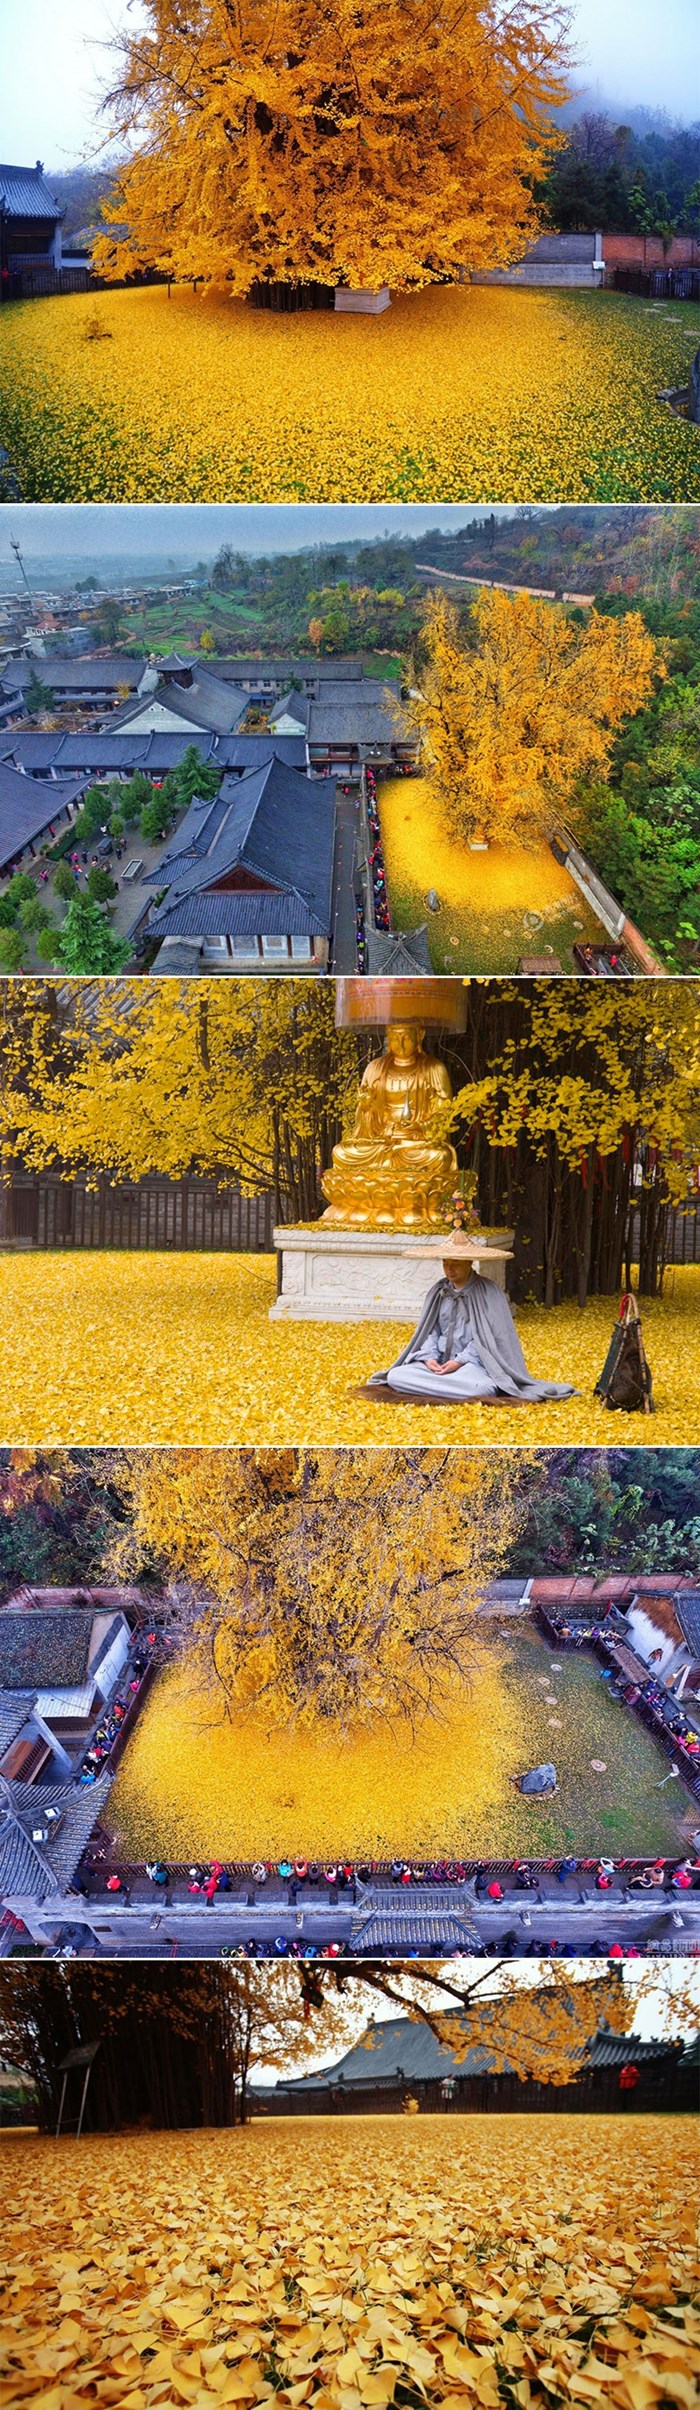 Predivno 1400 godina staro stablo ginkga budistički hram okupalo zlatnim morem lišća